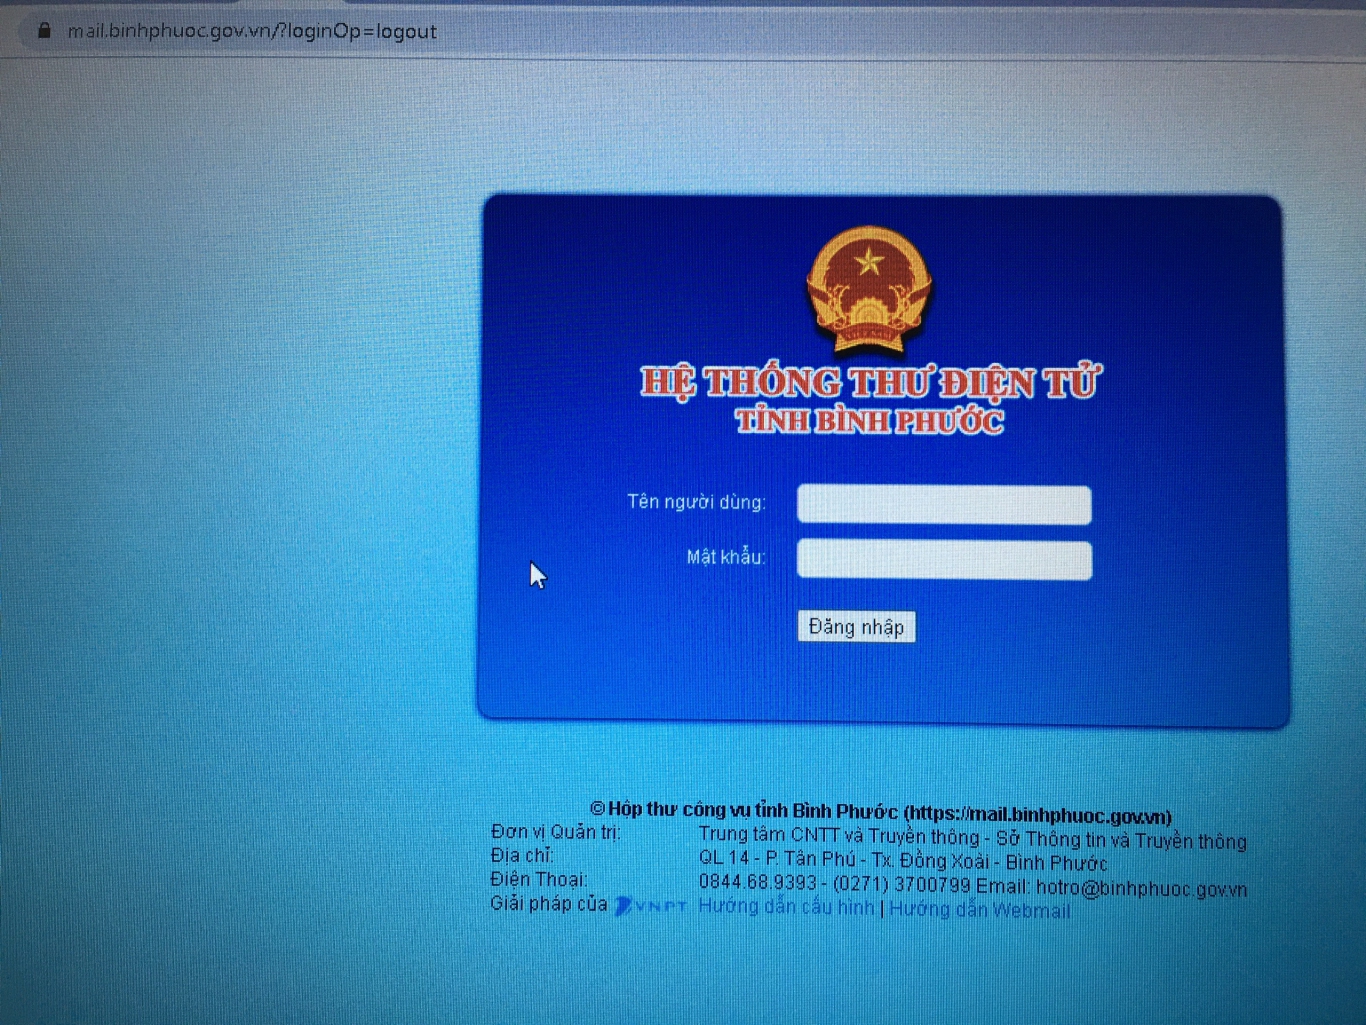 Hình ảnh minh họa địa chỉ Hộp thư điện tử công vụ tỉnh Bình Phước